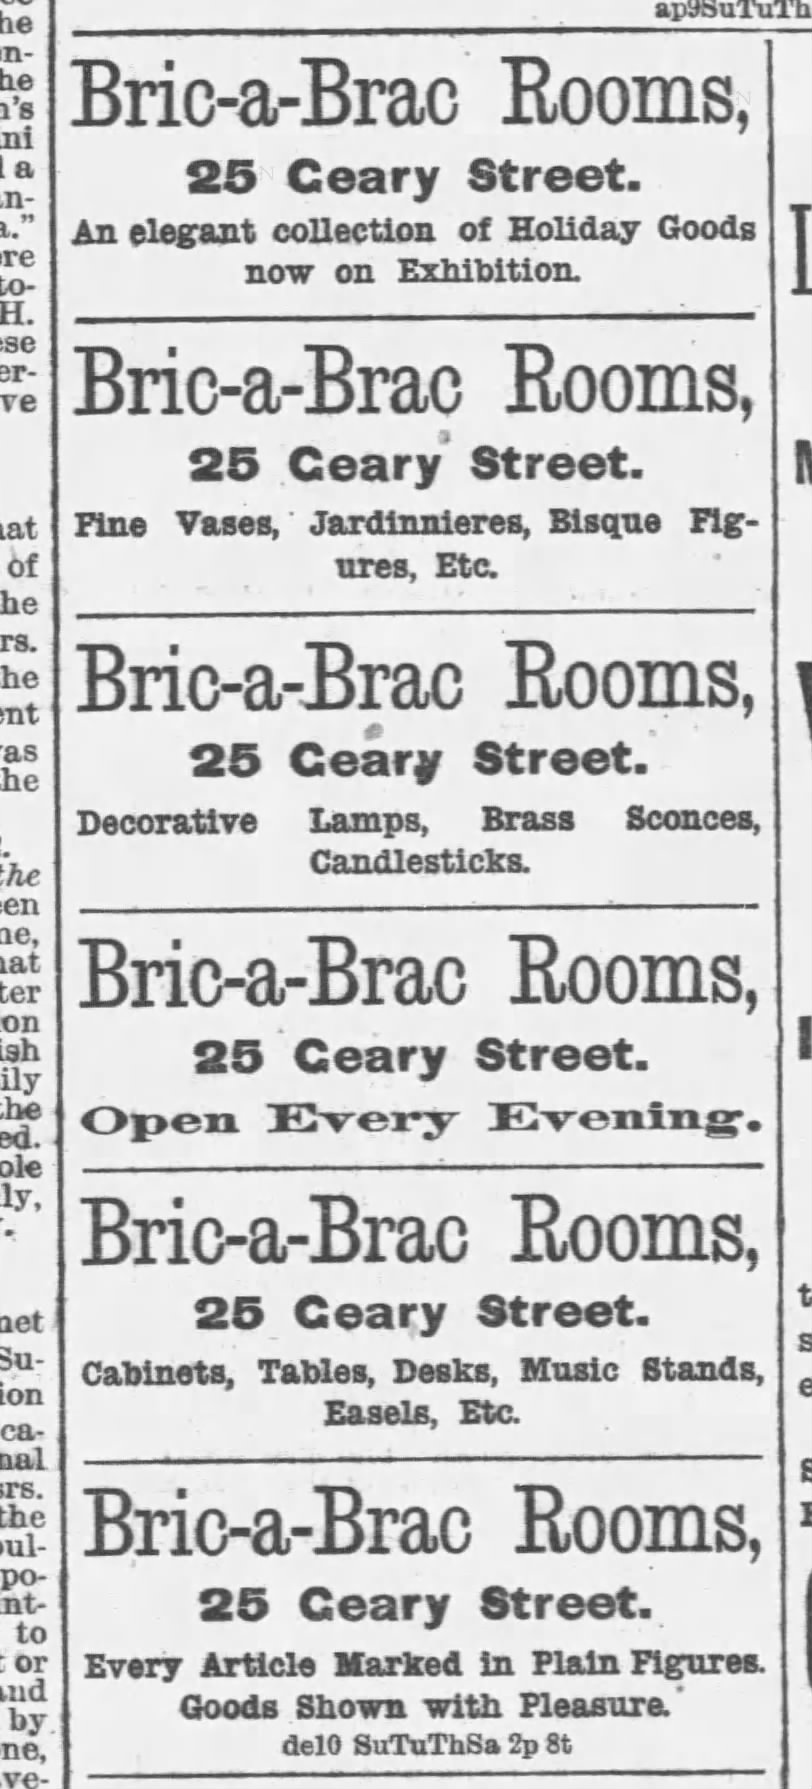 Bric-a-brac ad, 1882